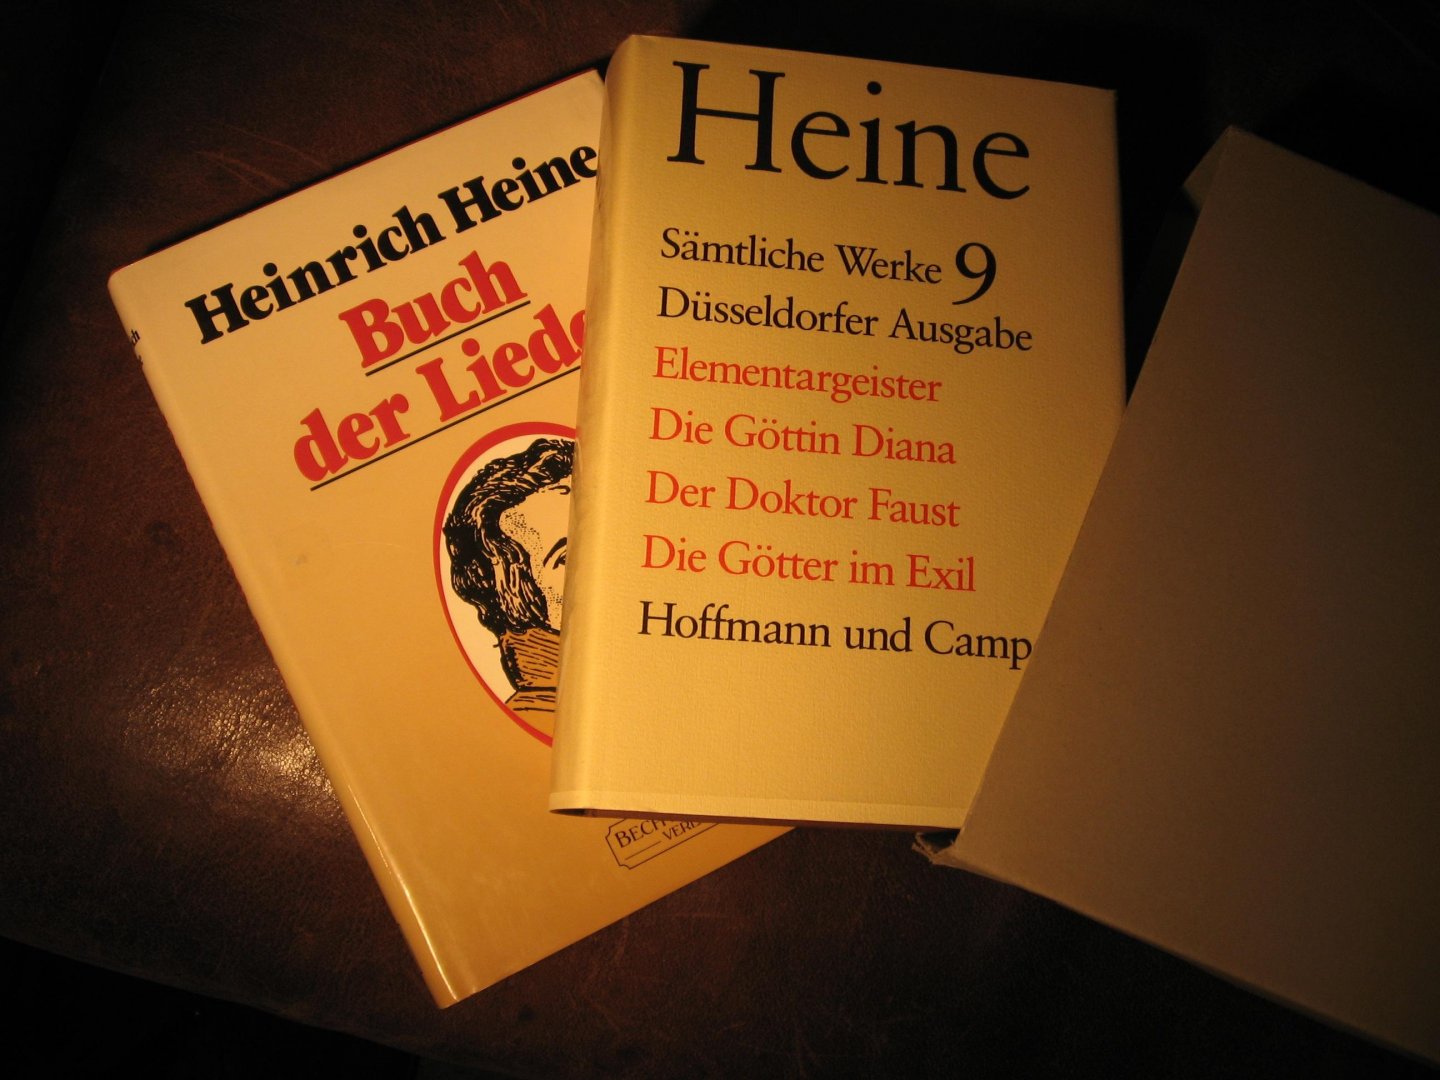 Heine, H. - Samtliche Werke 9 + Buch der Lieder.